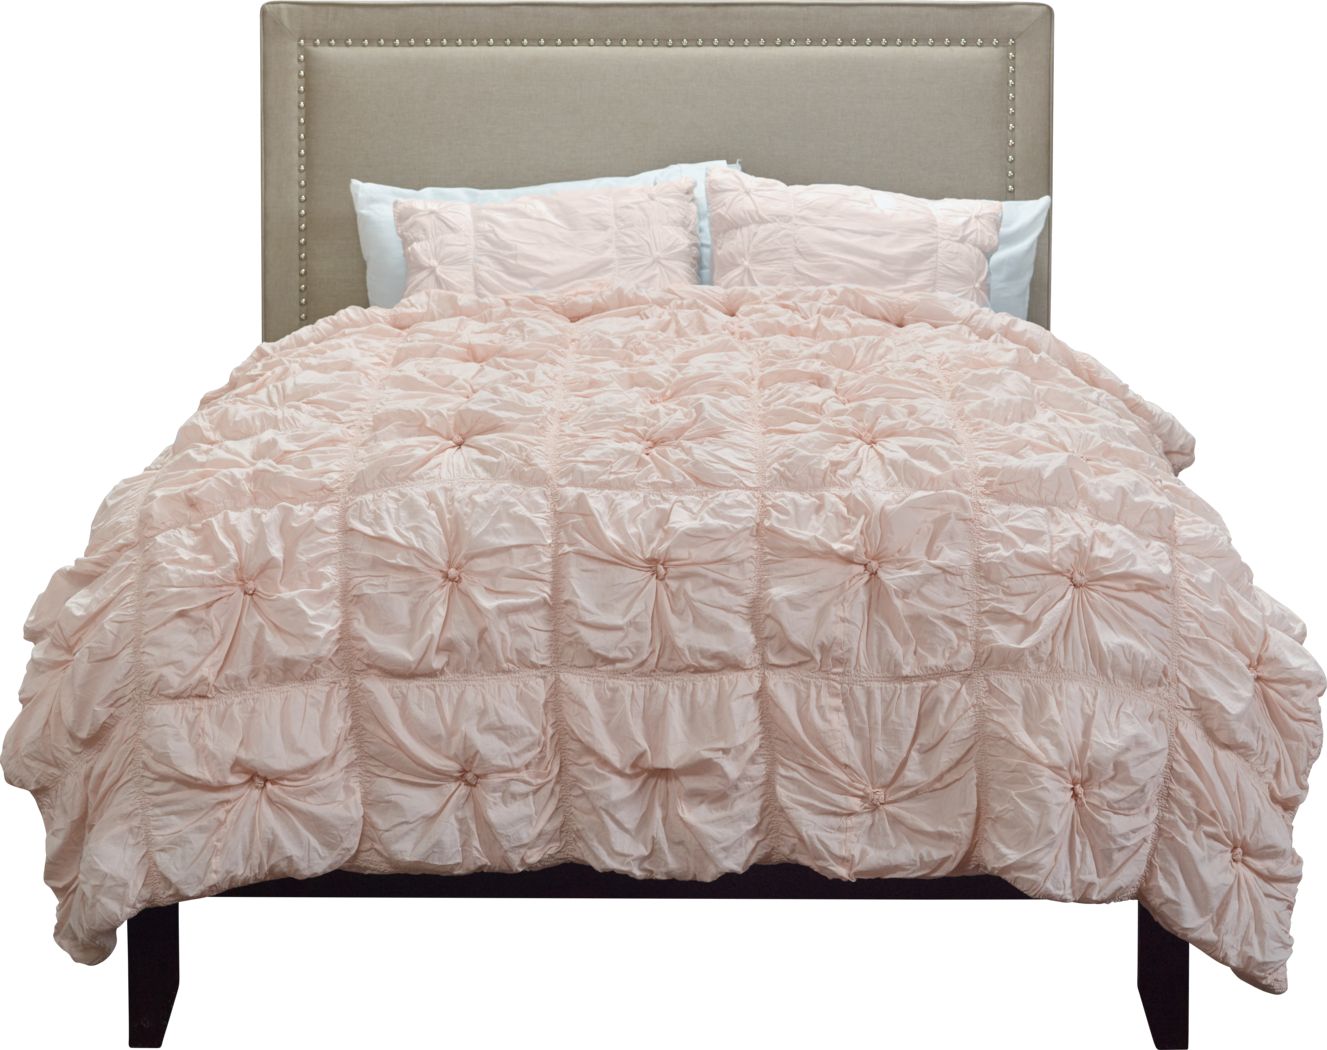 Reia Pink 3 Pc Queen Comforter Set - Rooms To Go